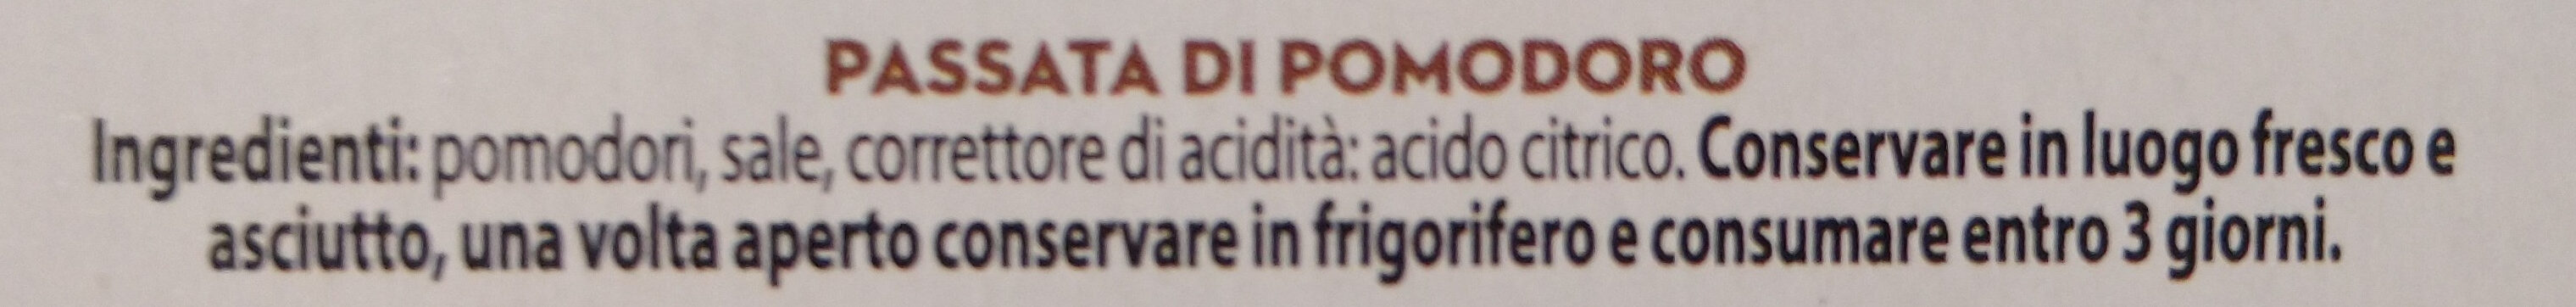 Passata di pomodoro - Ingredientes - it